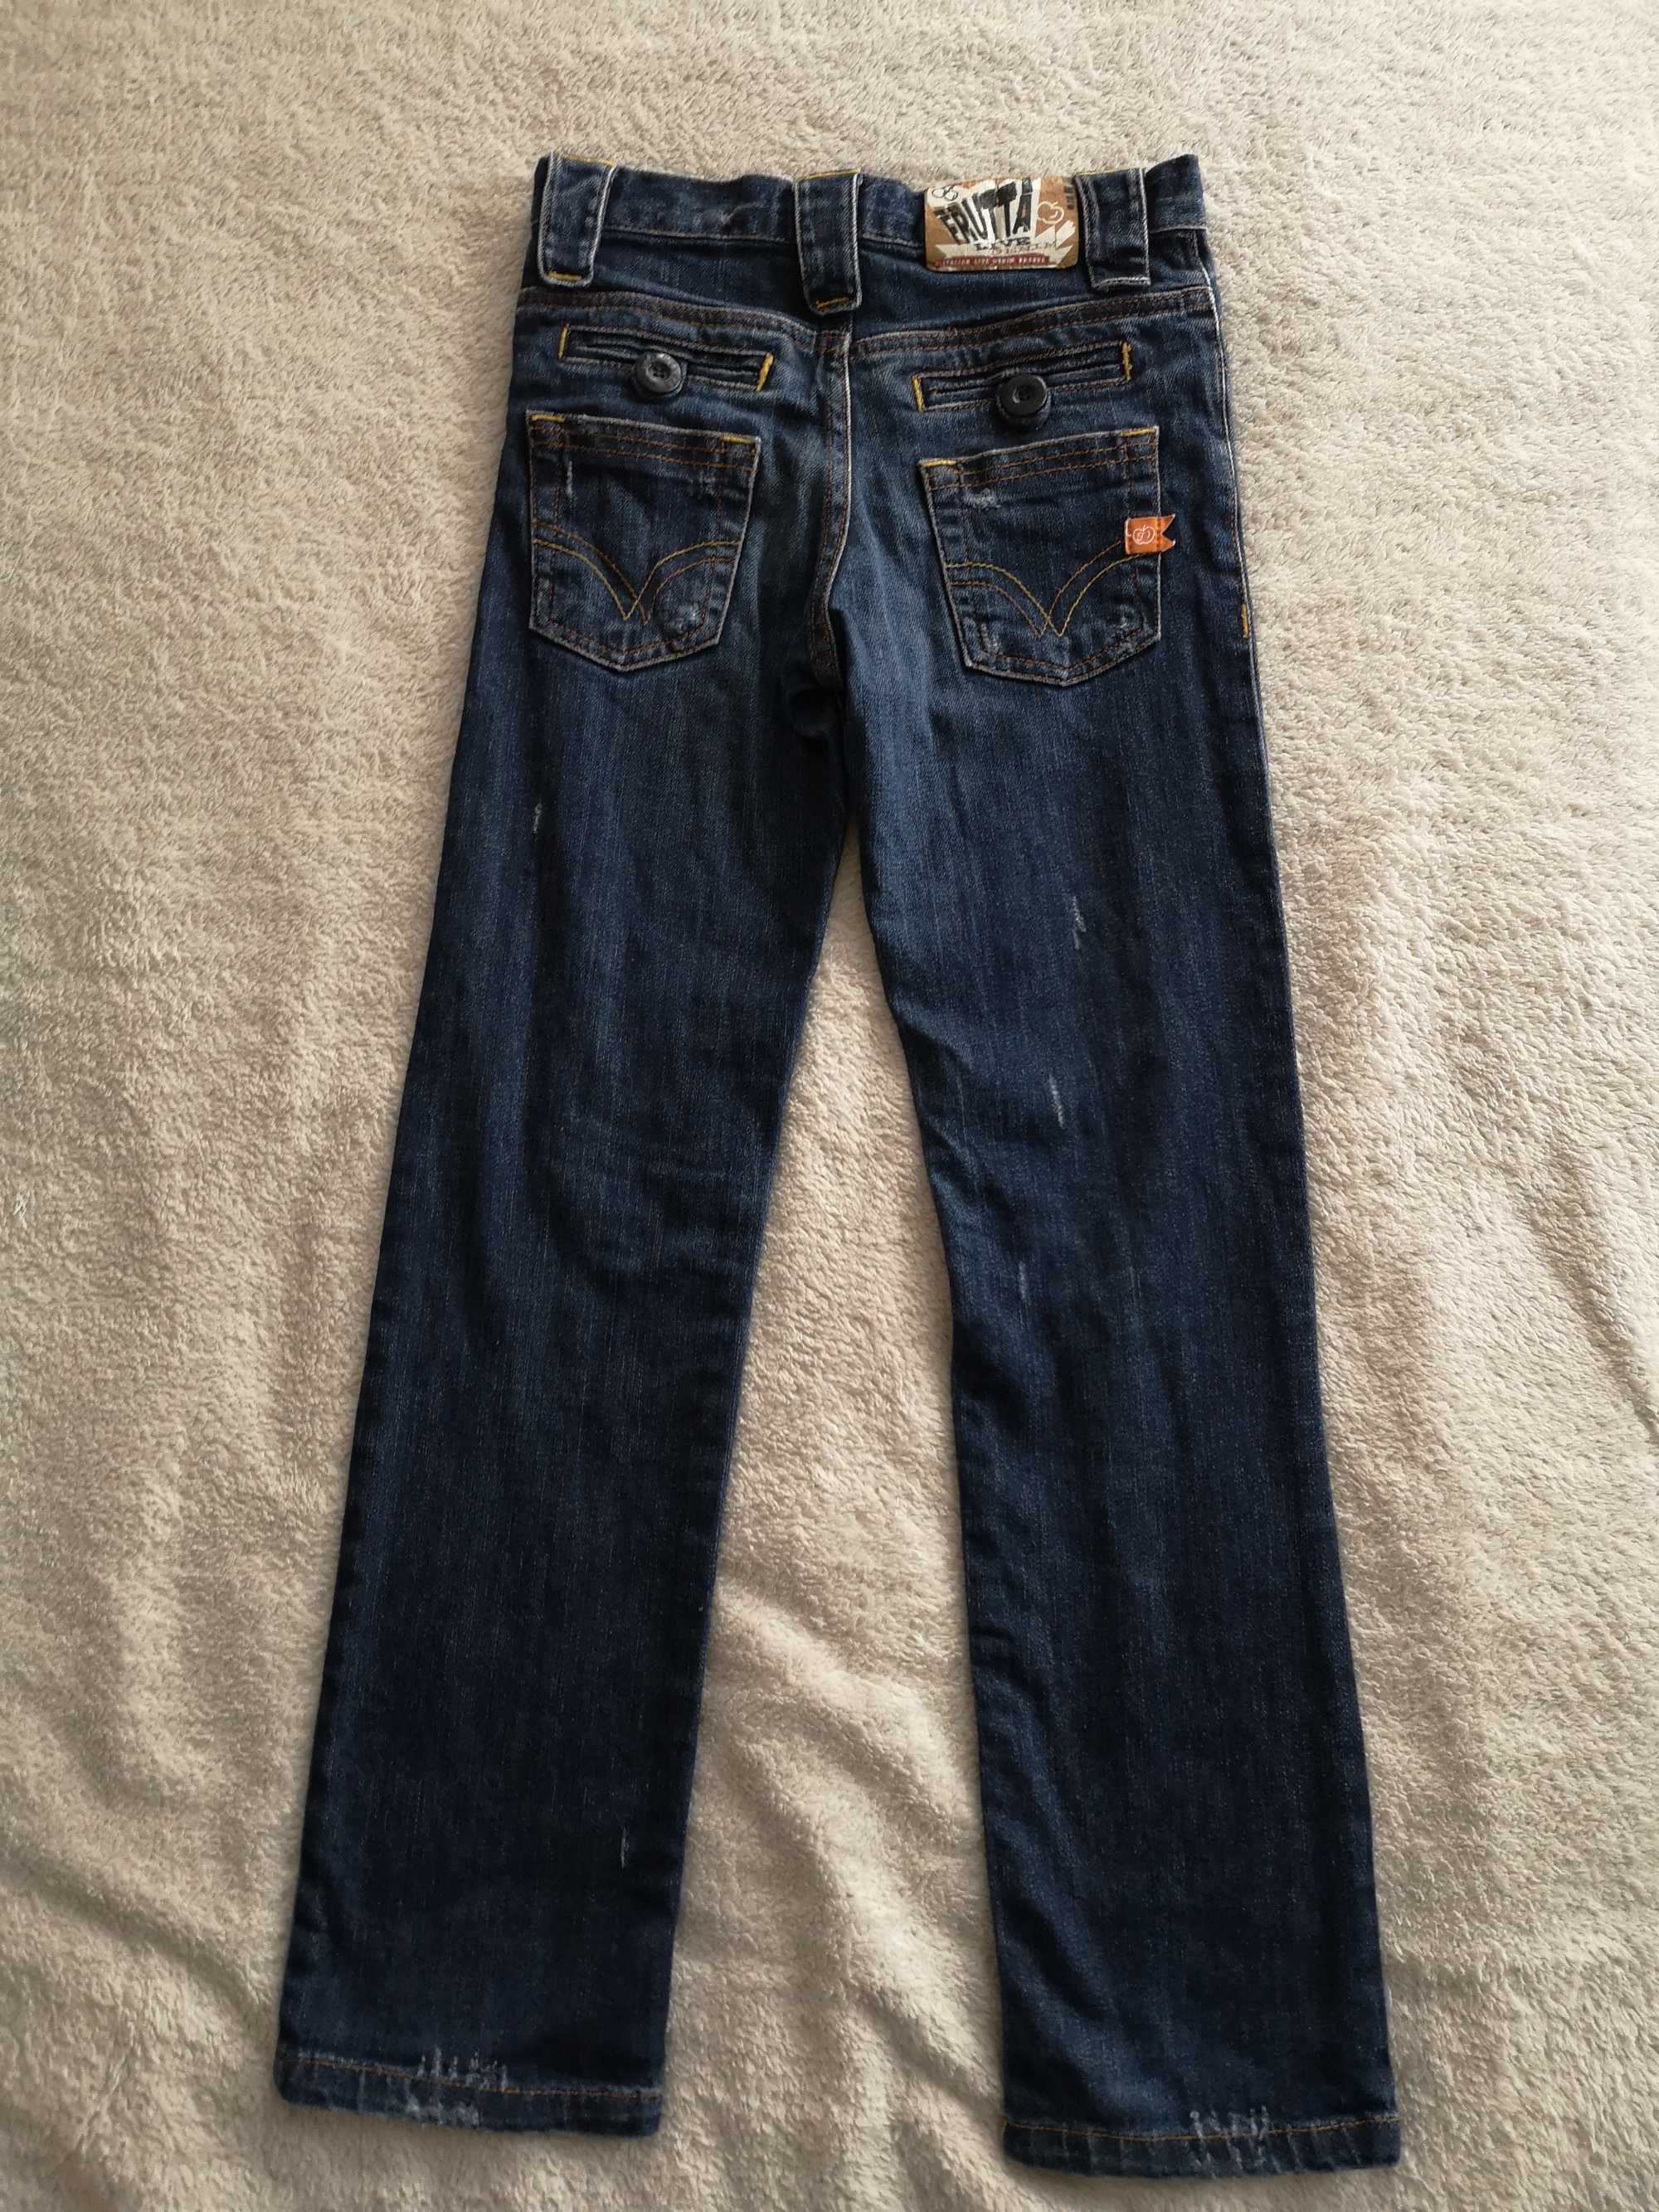 Przecierane spodnie jeansowe jeansy Domino Frutta 146 - 152 jak nowe